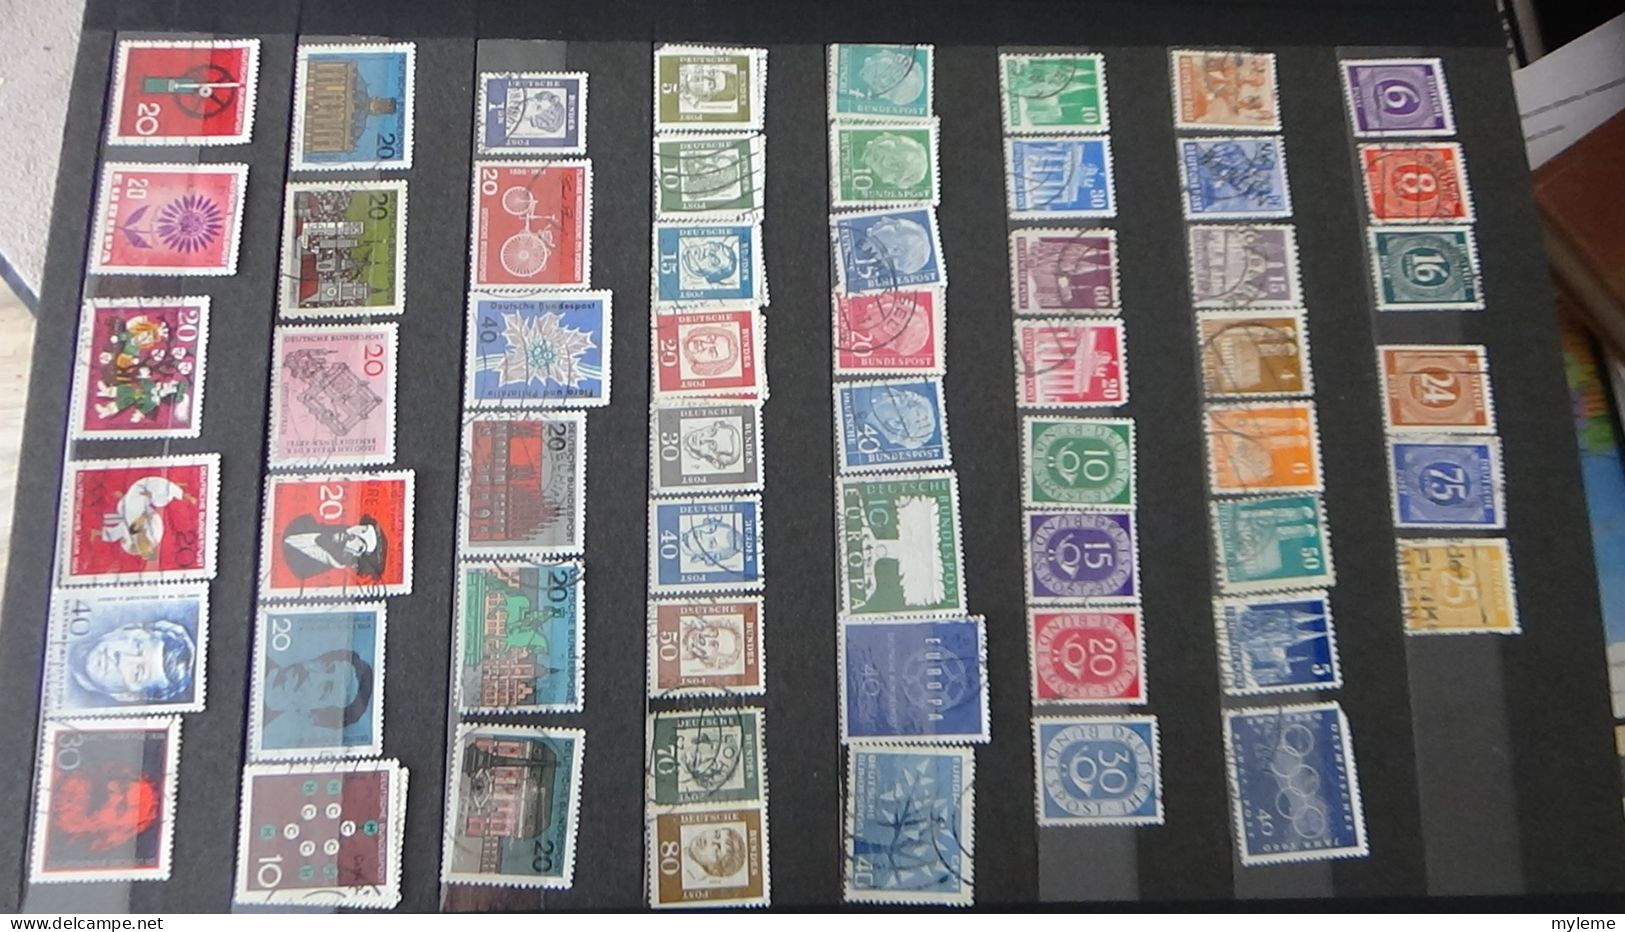 BF5 Collection de timbres oblitérés + plaquette de timbres ** de France. A saisir !!!